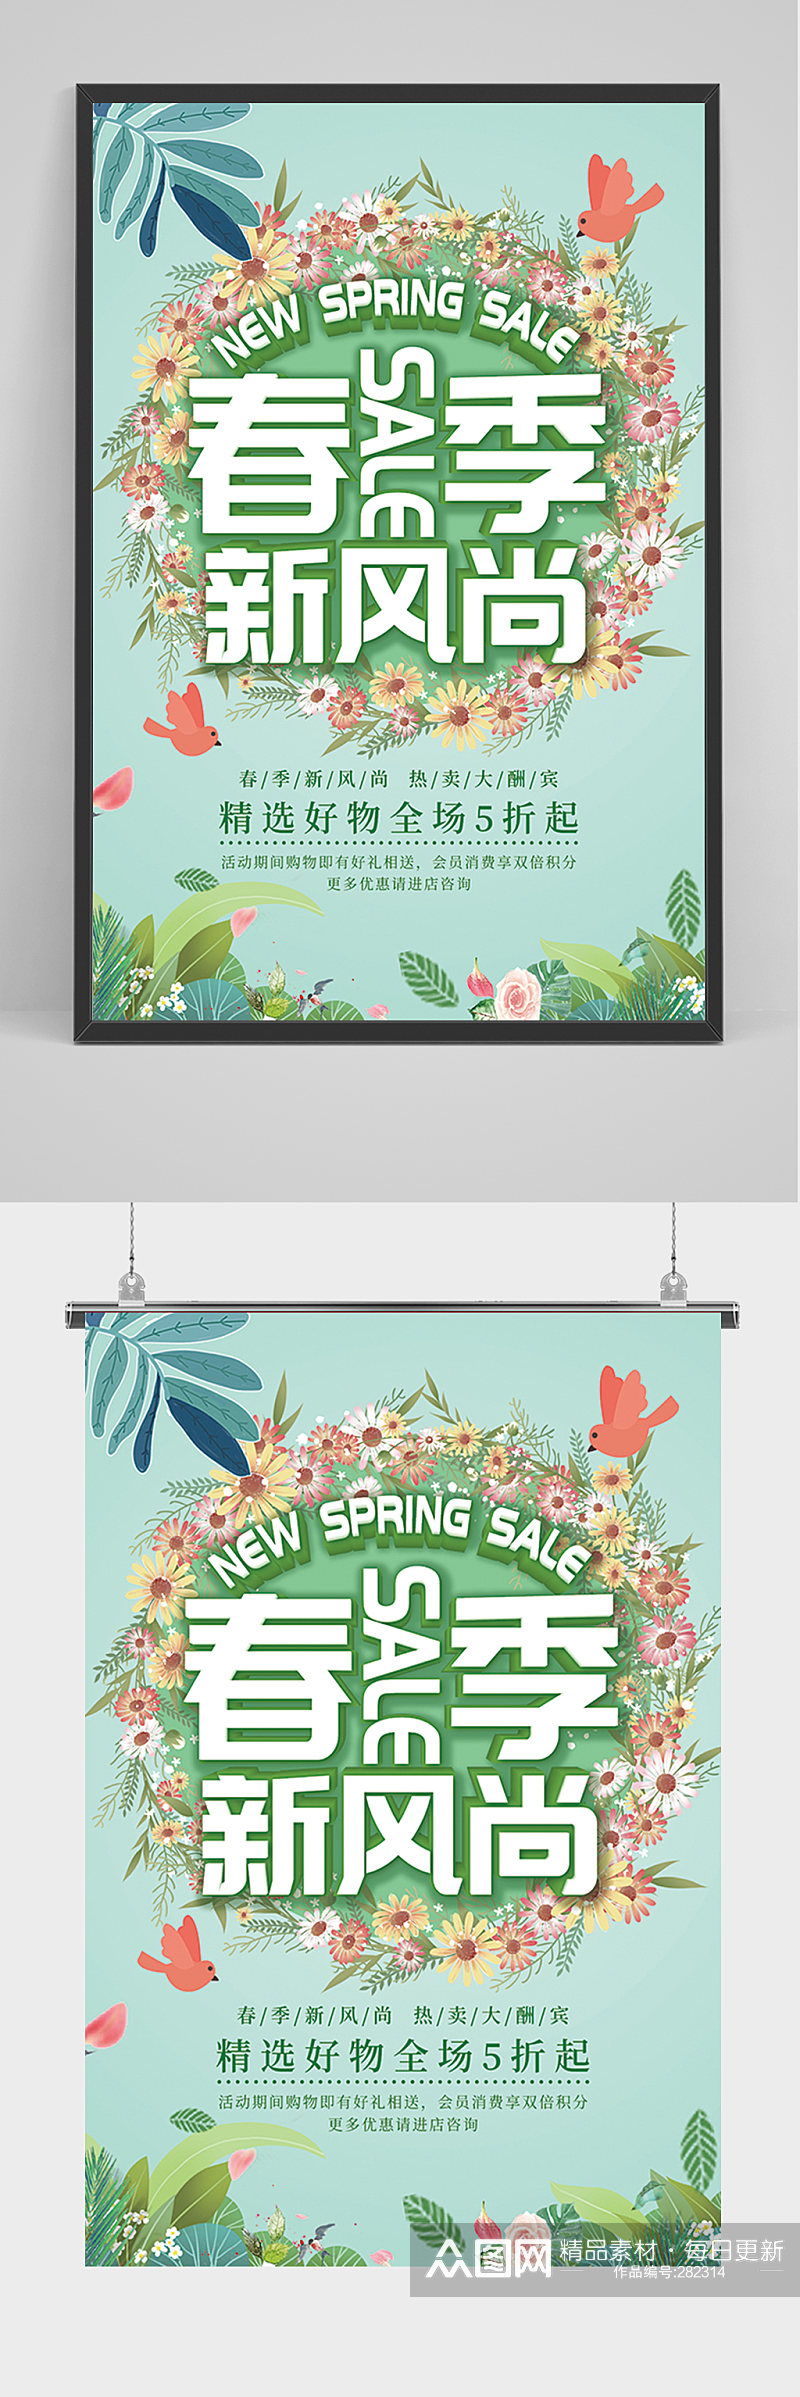 春季新风尚海报促销素材